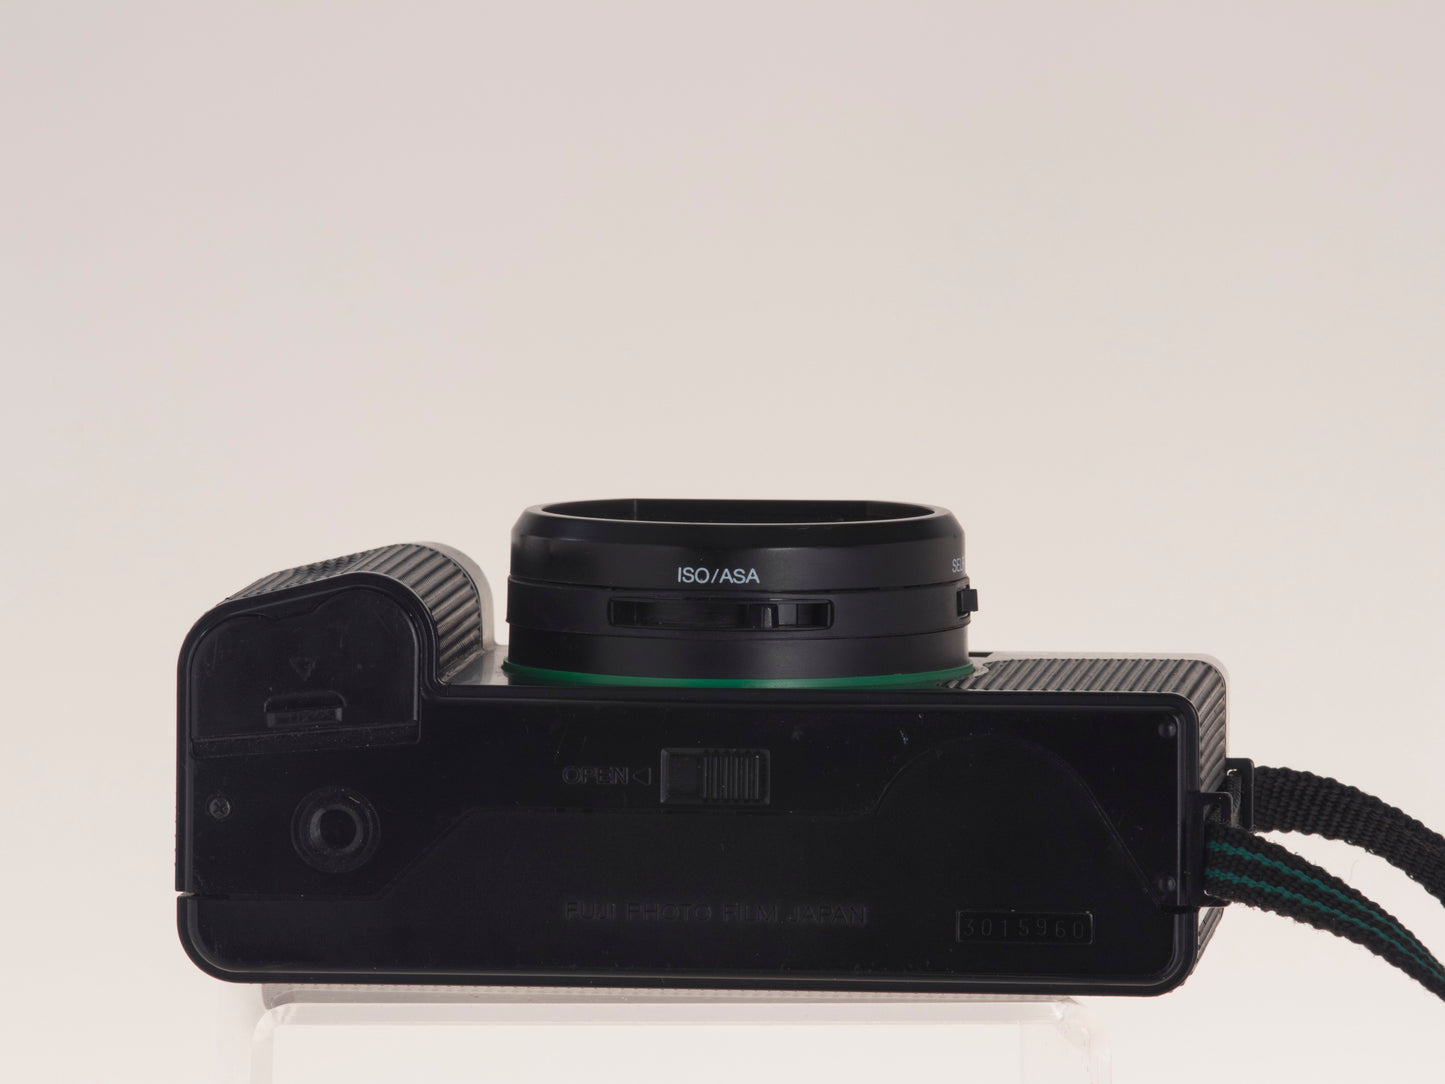 Fujica DL-100 35mm camera